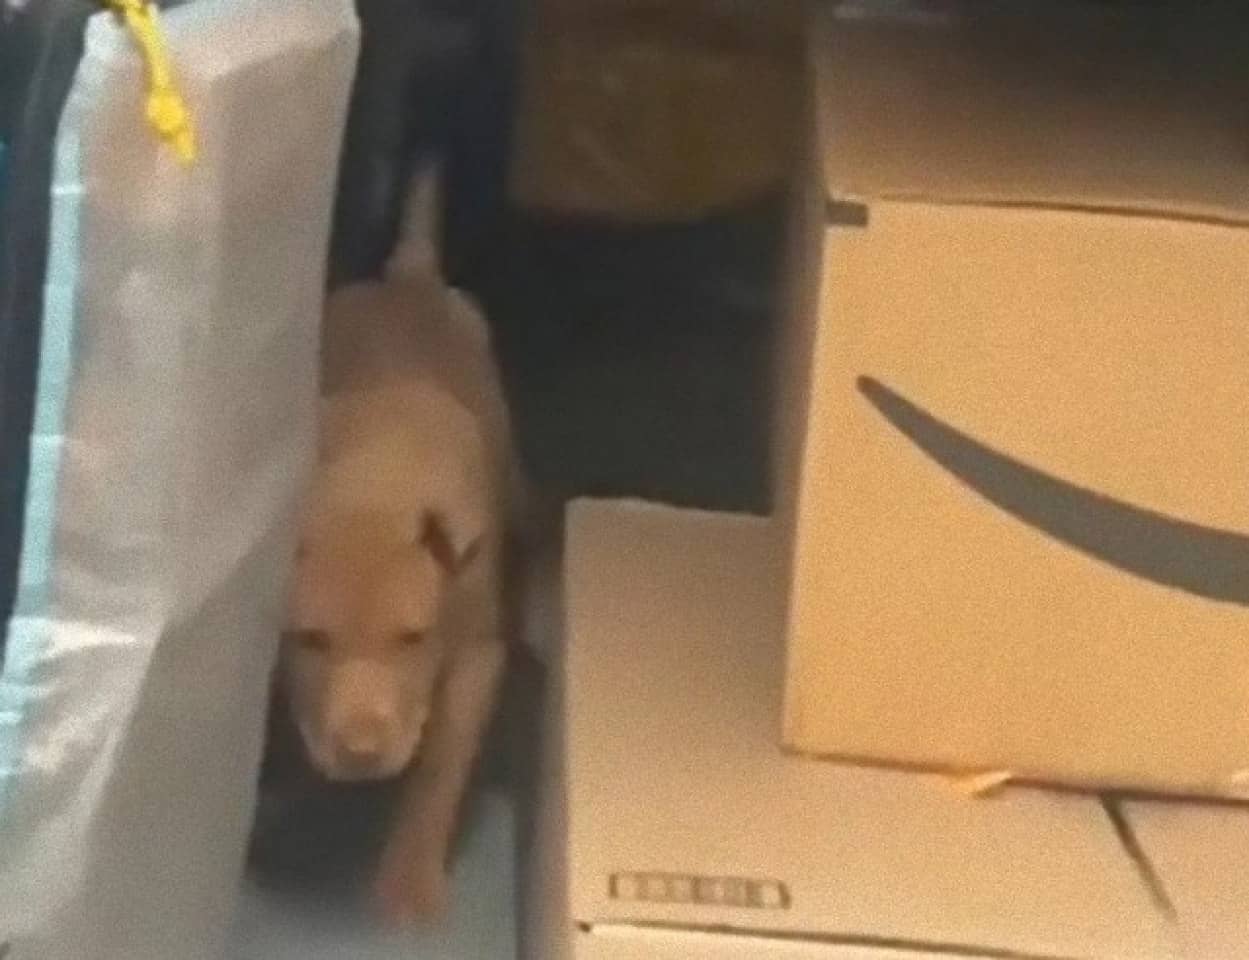 Amazonの配達員が顧客の家の犬を盗もうとしたところを発見され解雇